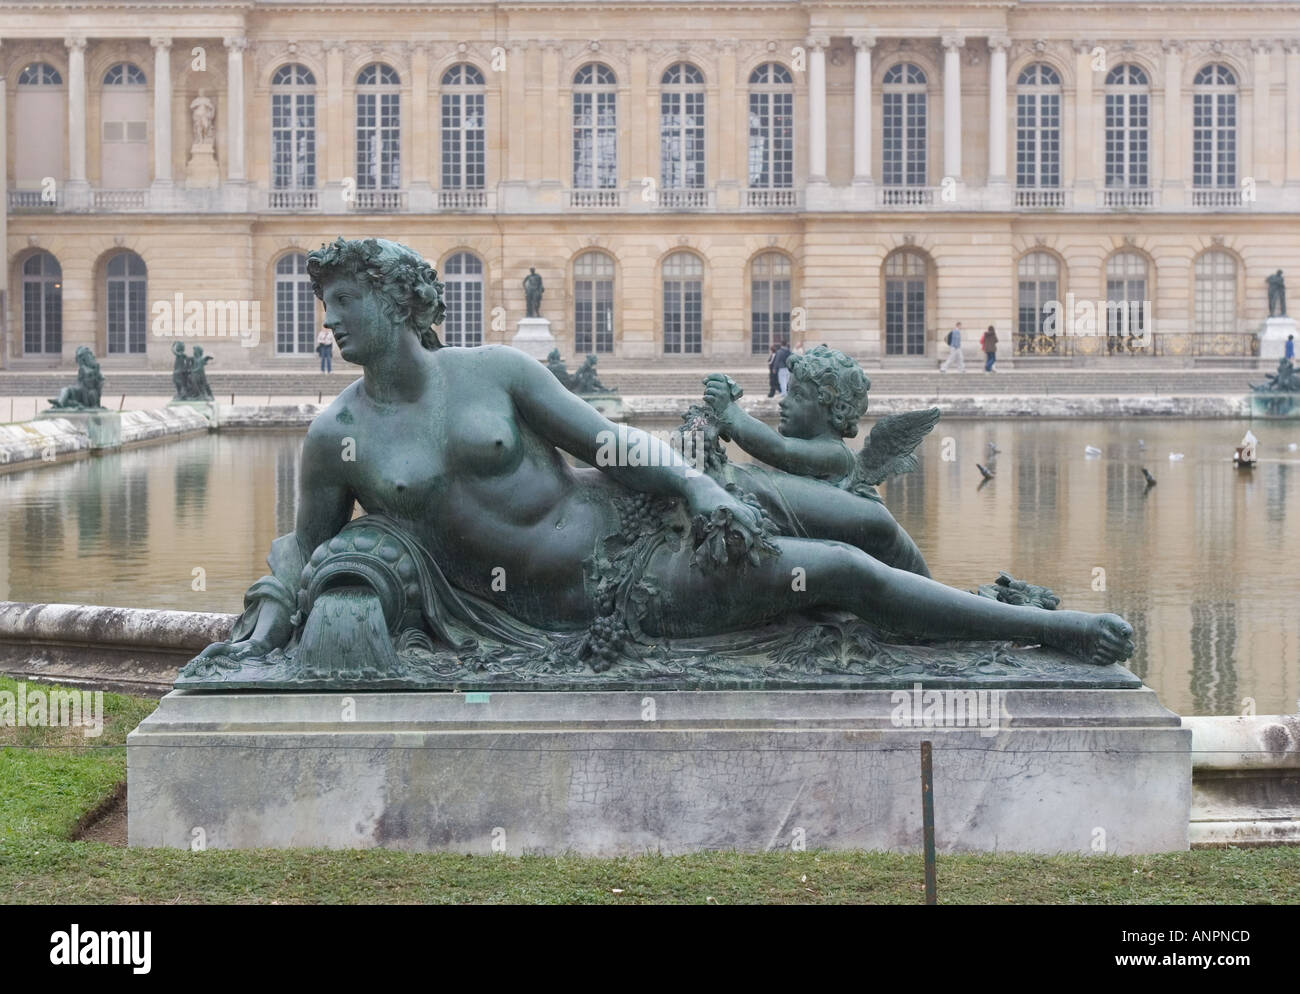 Statuen der Parterre in den Gärten des Schlosses von Versailles in Paris Frankreich Stockfoto